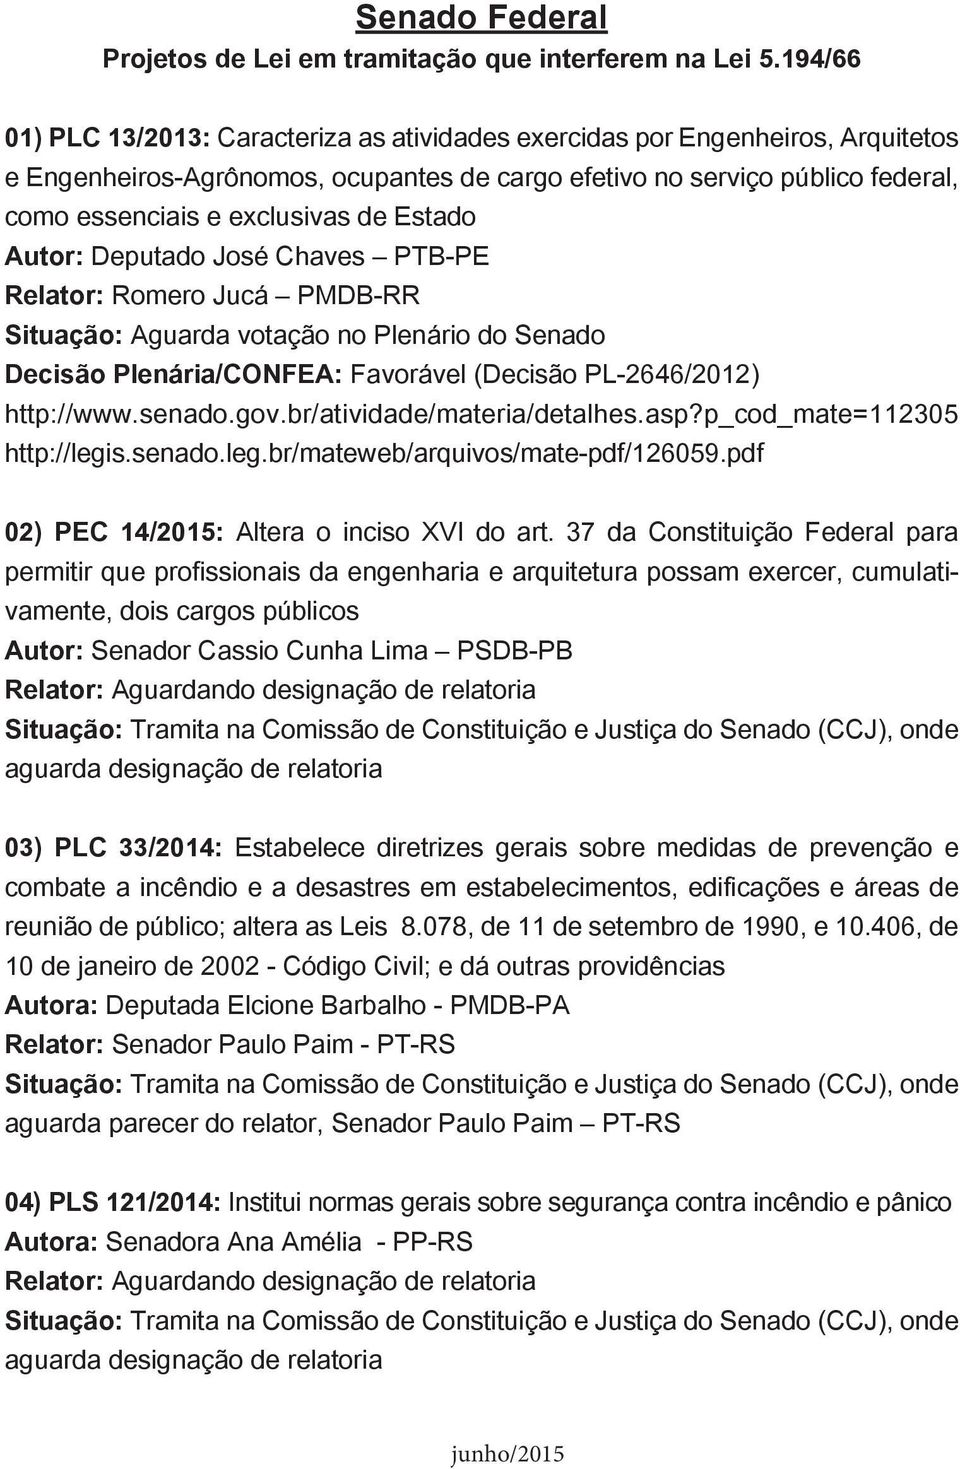 Estado Autor: Deputado José Chaves PTB-PE Relator: Romero Jucá PMDB-RR Situação: Aguarda votação no Plenário do Senado Decisão Plenária/CONFEA: Favorável (Decisão PL-2646/2012) http://www.senado.gov.